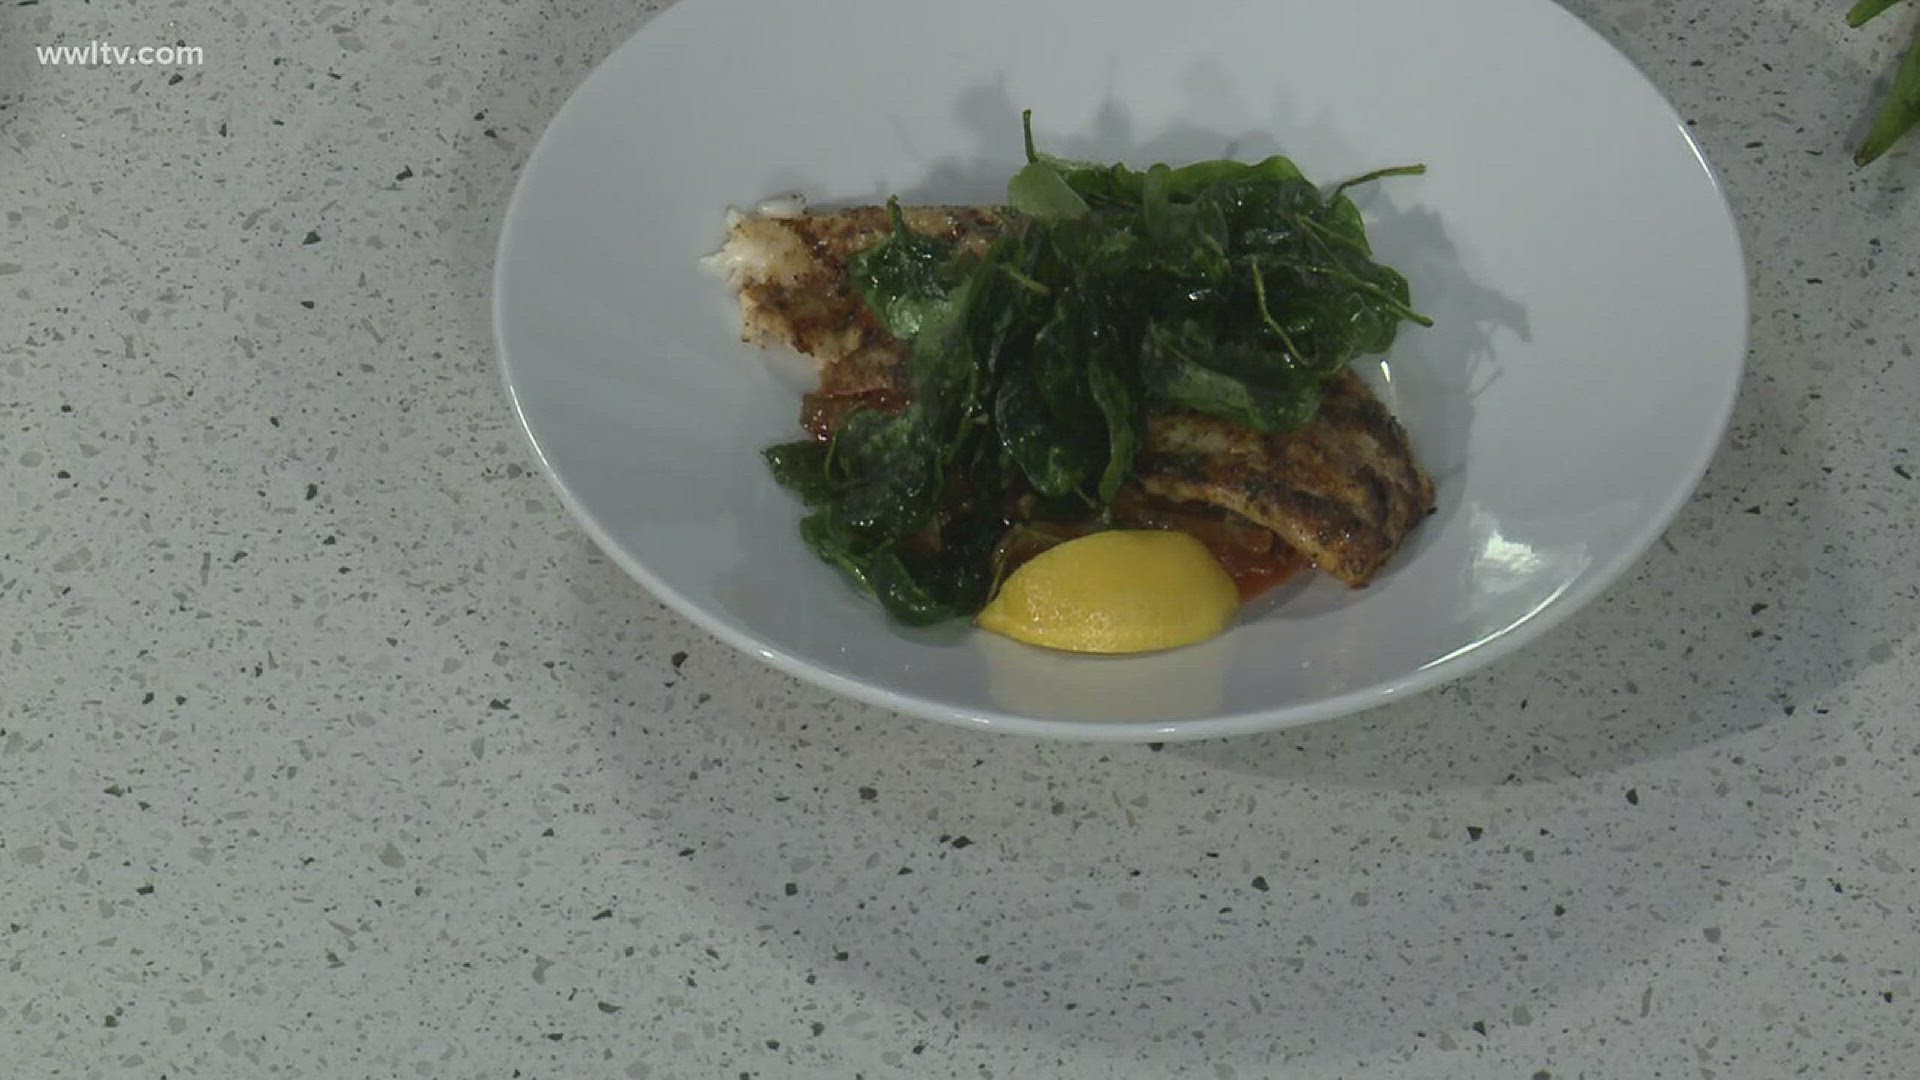 Zea's Chef Greg Reggio makes Grilled gulf fish creole